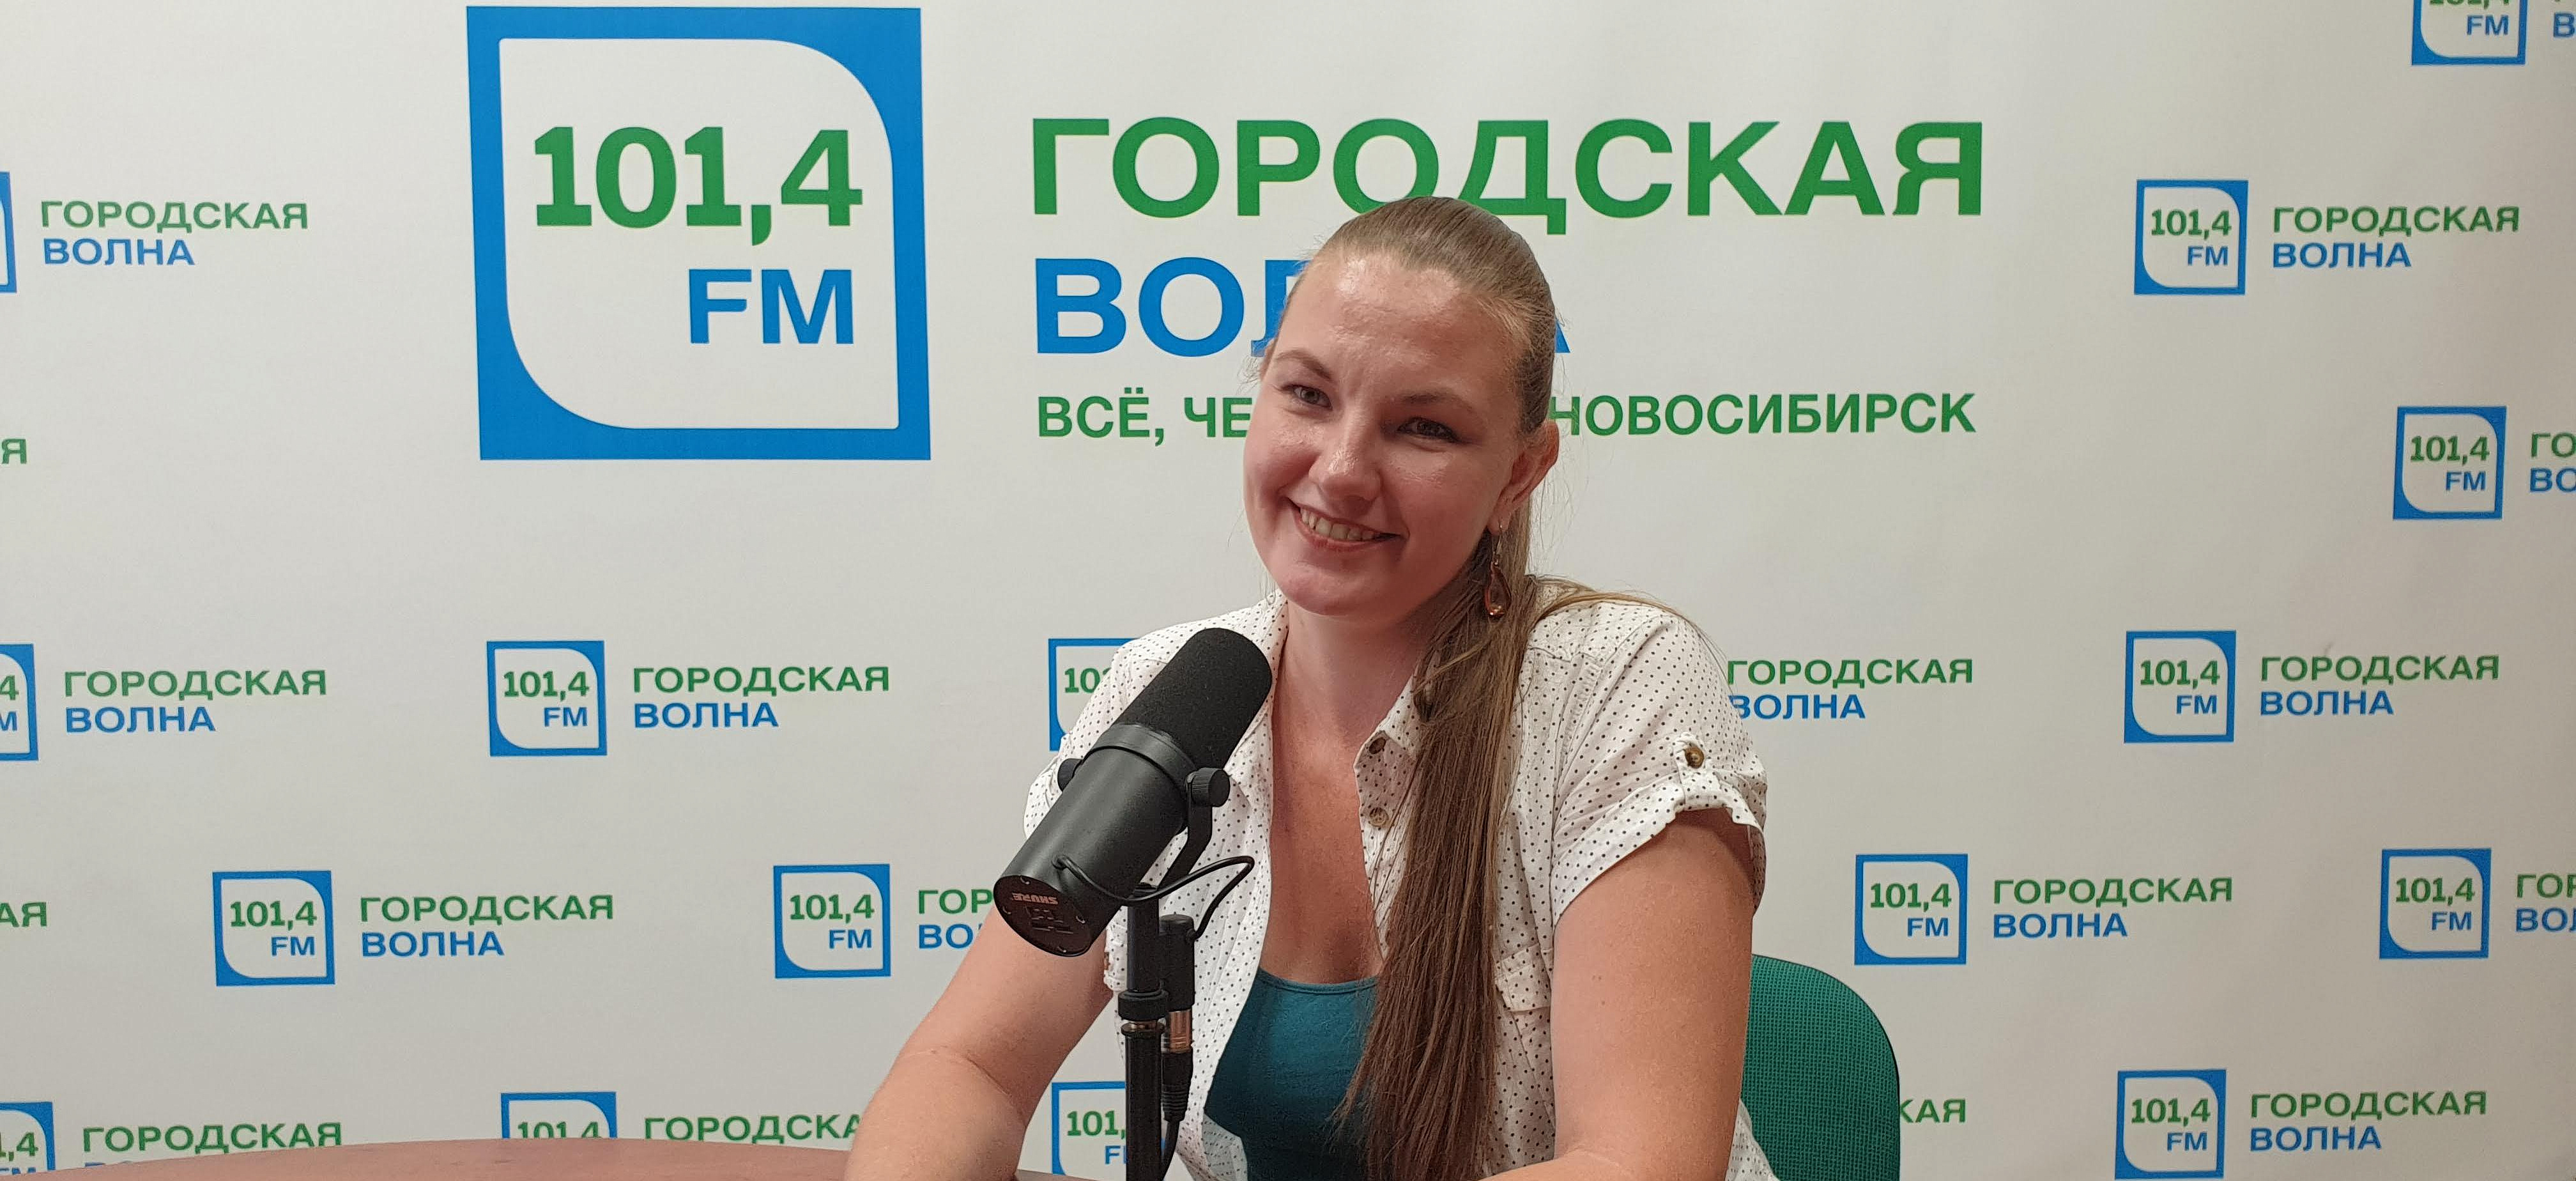 Организатор балов Анна Абрамова: «Танцы положительно влияют на здоровье»